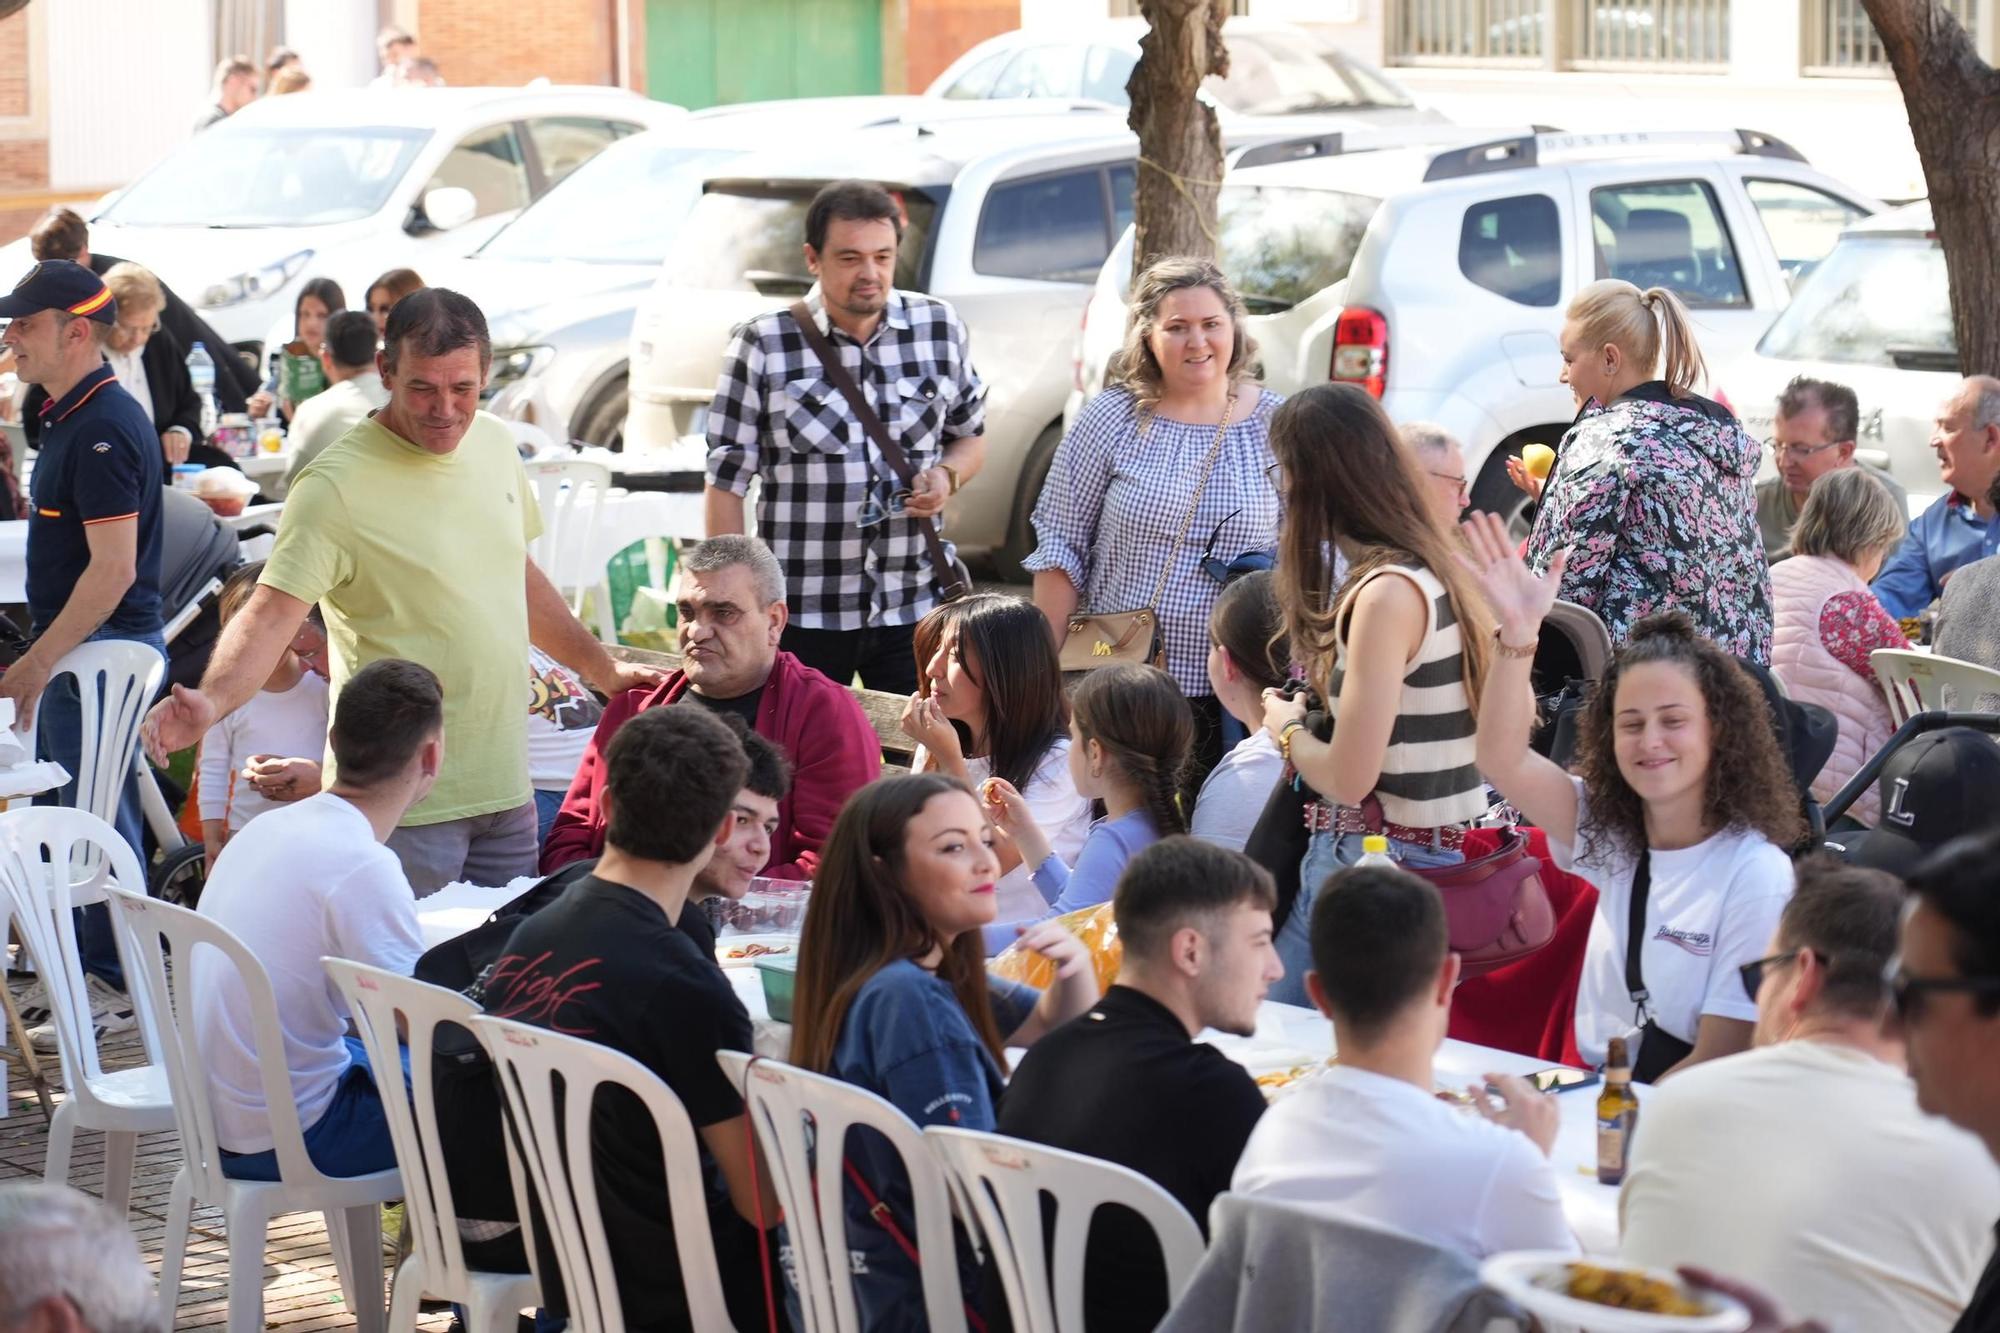 Las mejores imágenes de las multitudinarias paellas en un barrio de Vila-real